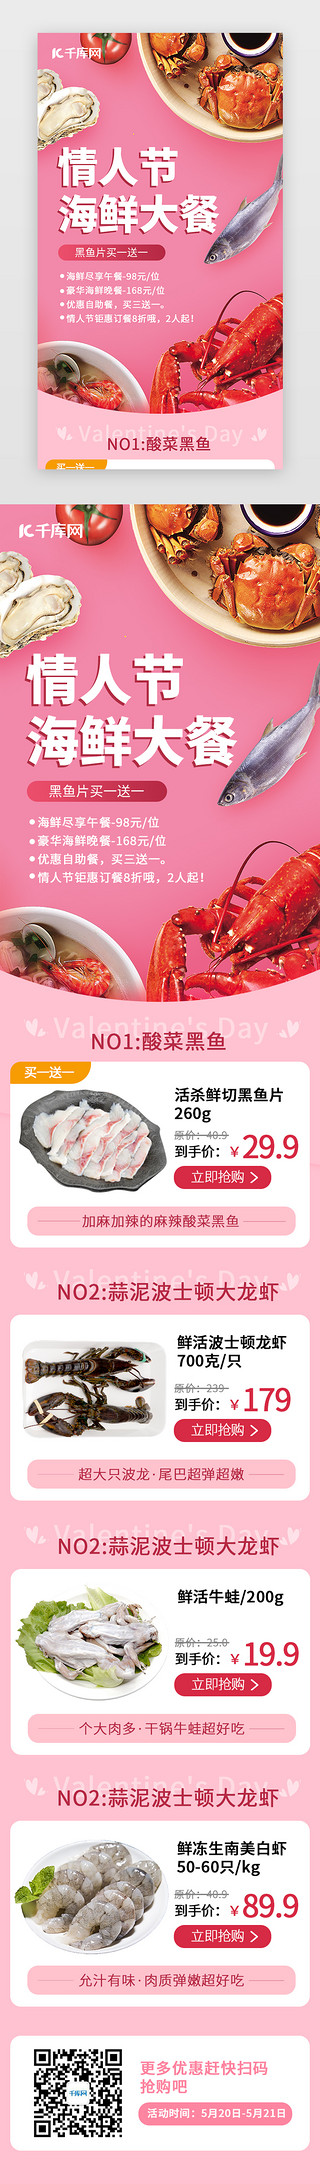 海鲜花甲UI设计素材_情人节海鲜大餐H5